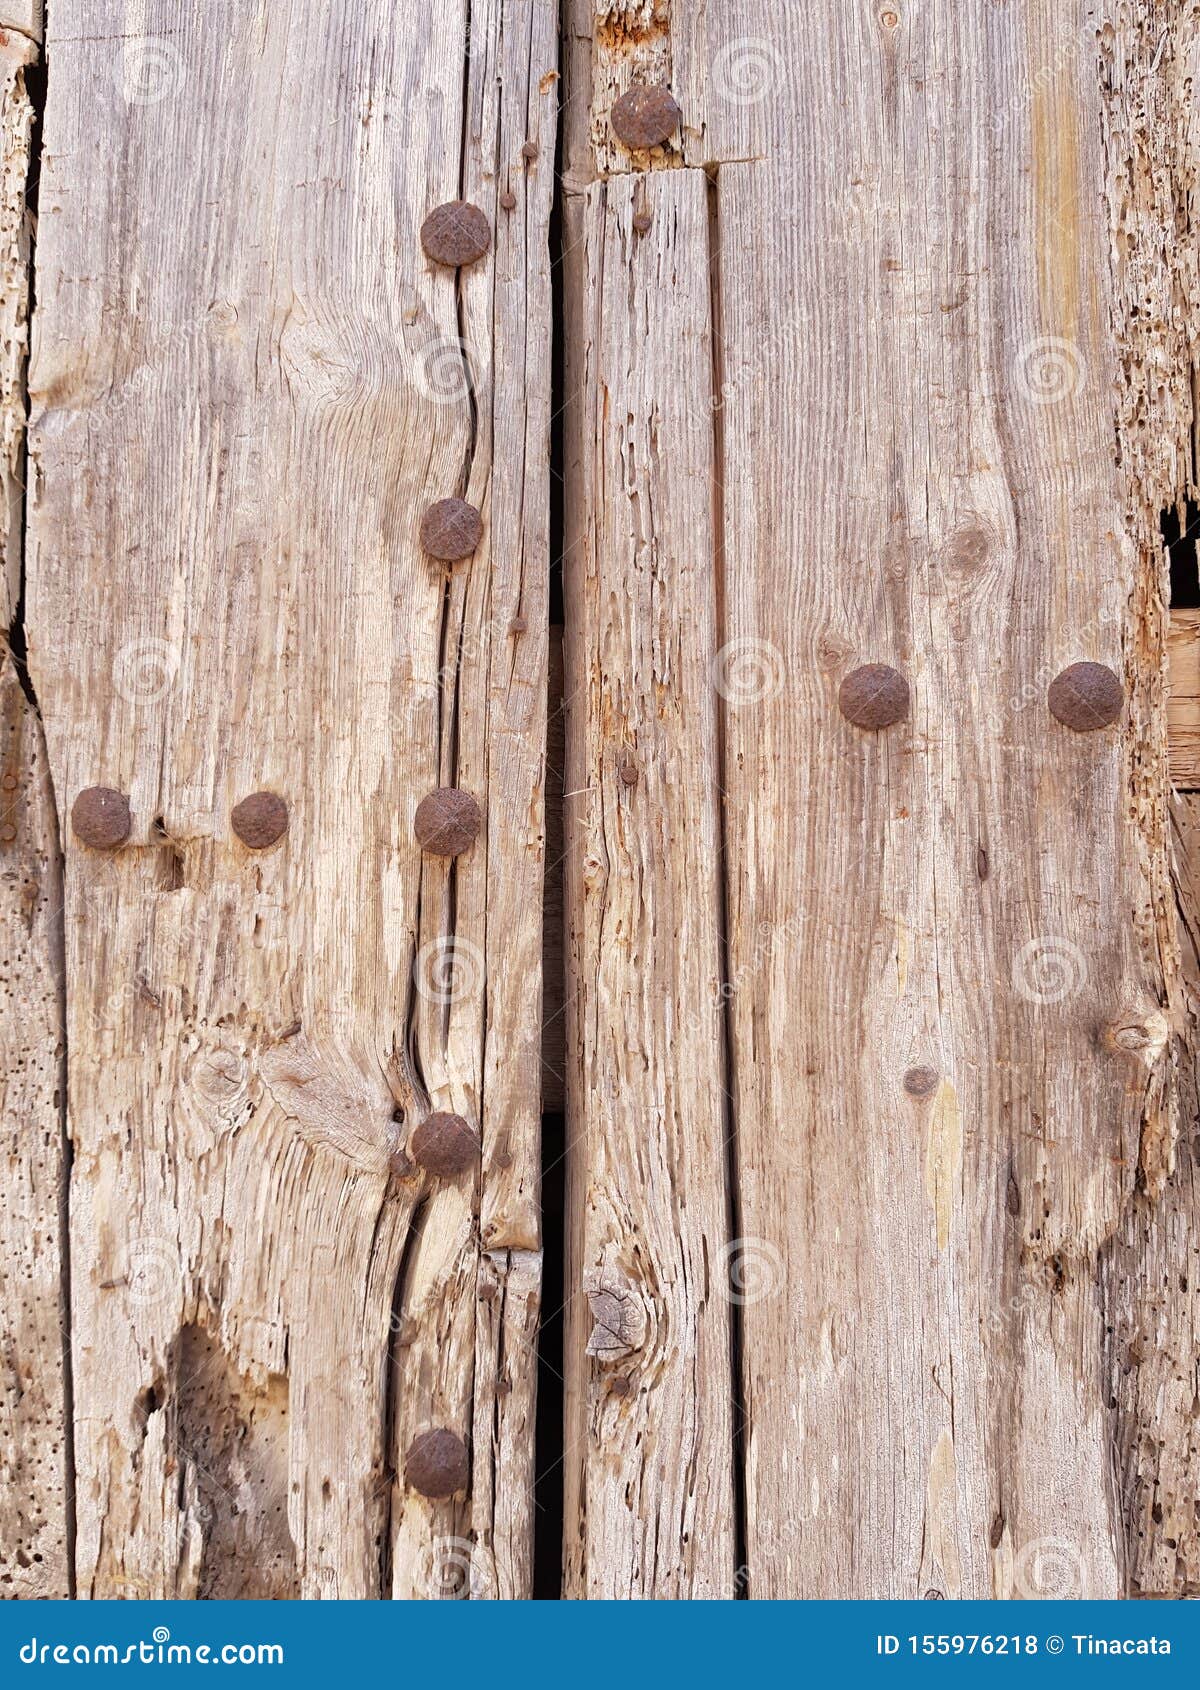 rusty brown mustard wood door